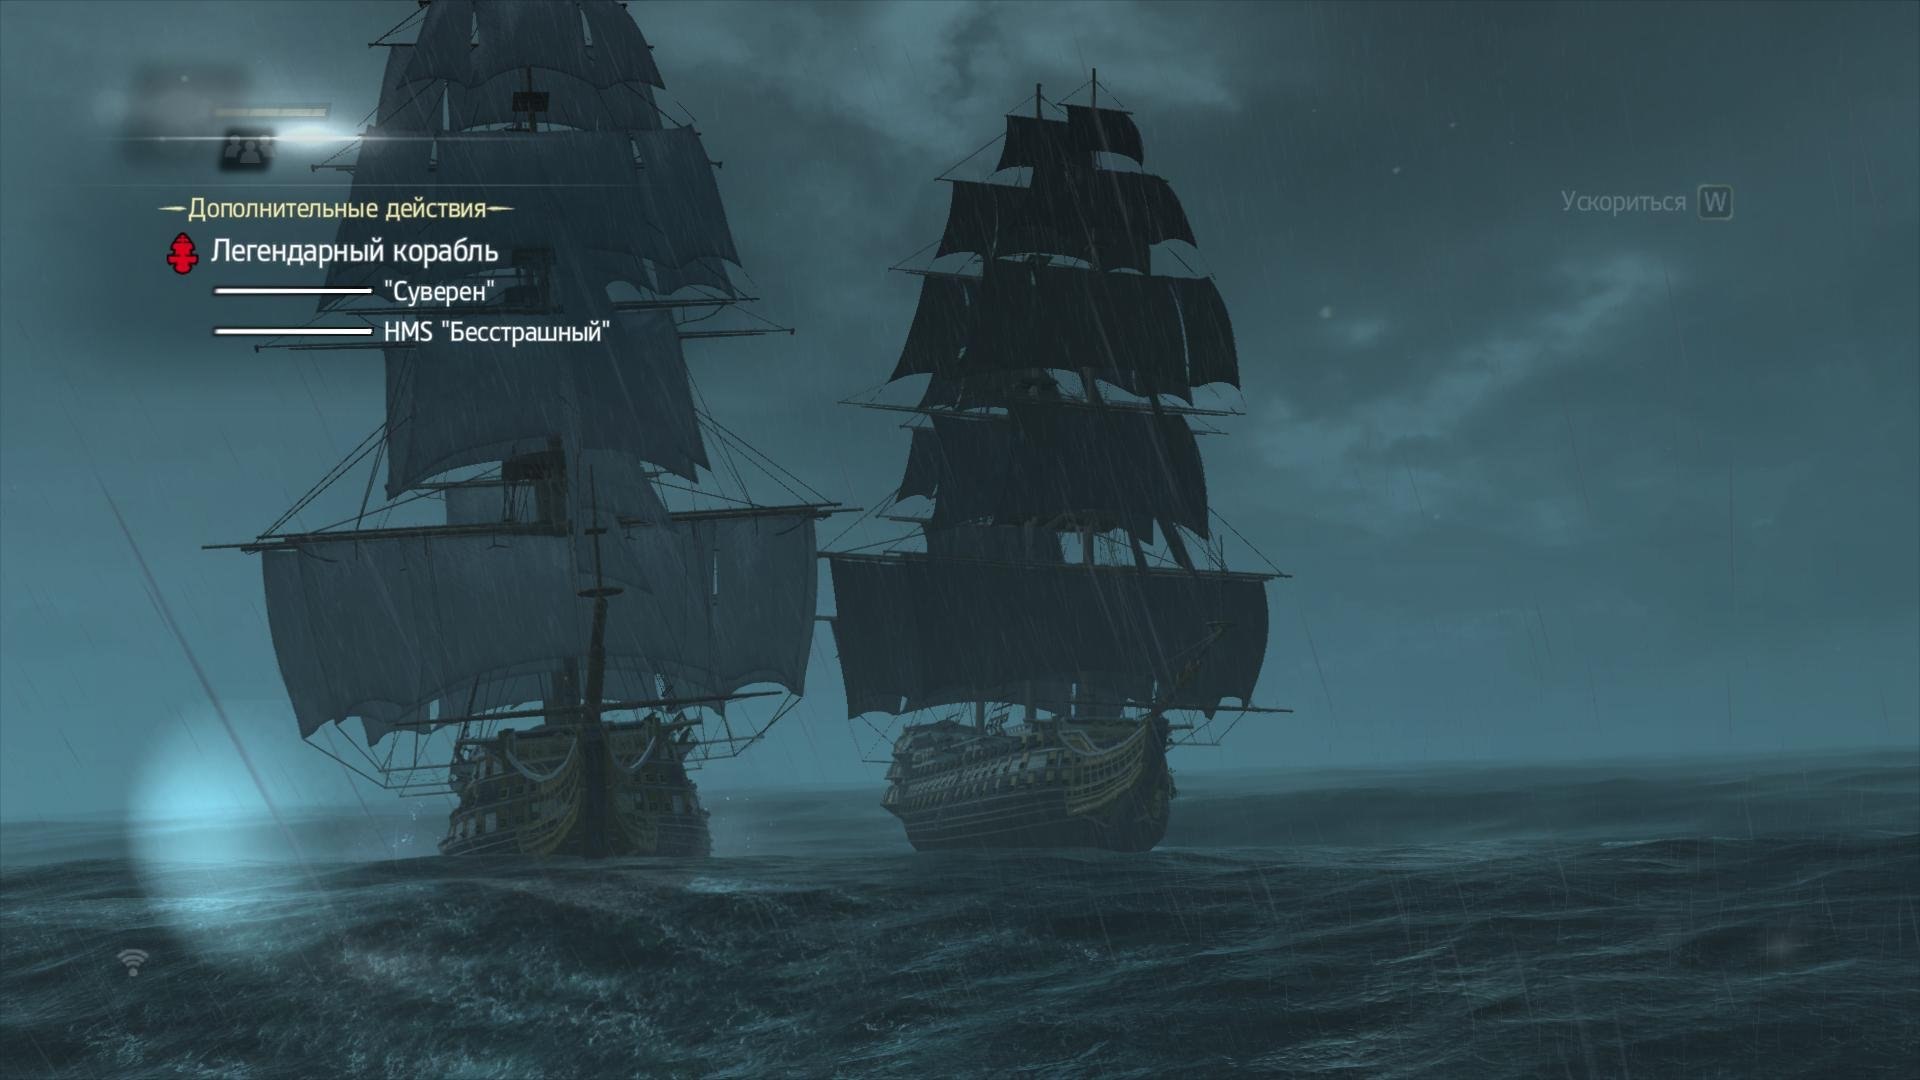 Легендарный корабль в assassins. Корабль Эдварда Кенуэя Галка. Легендарный корабль Эль Имполуто. Черная Жемчужина в ассасин Крид 4. Ассасин Крид 4 Блэк флаг легендарные корабли.